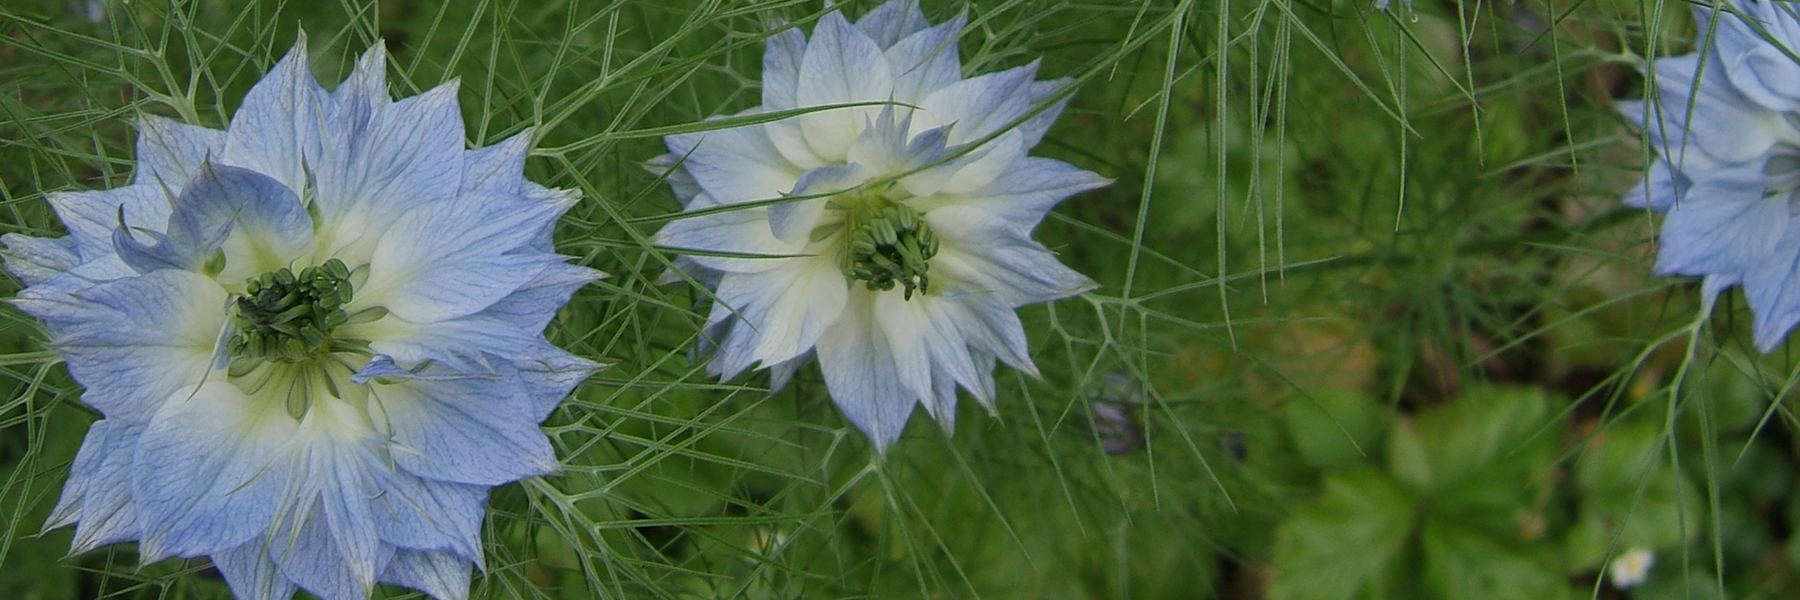 Blassblaue Blüten des Schwarzkümmels.